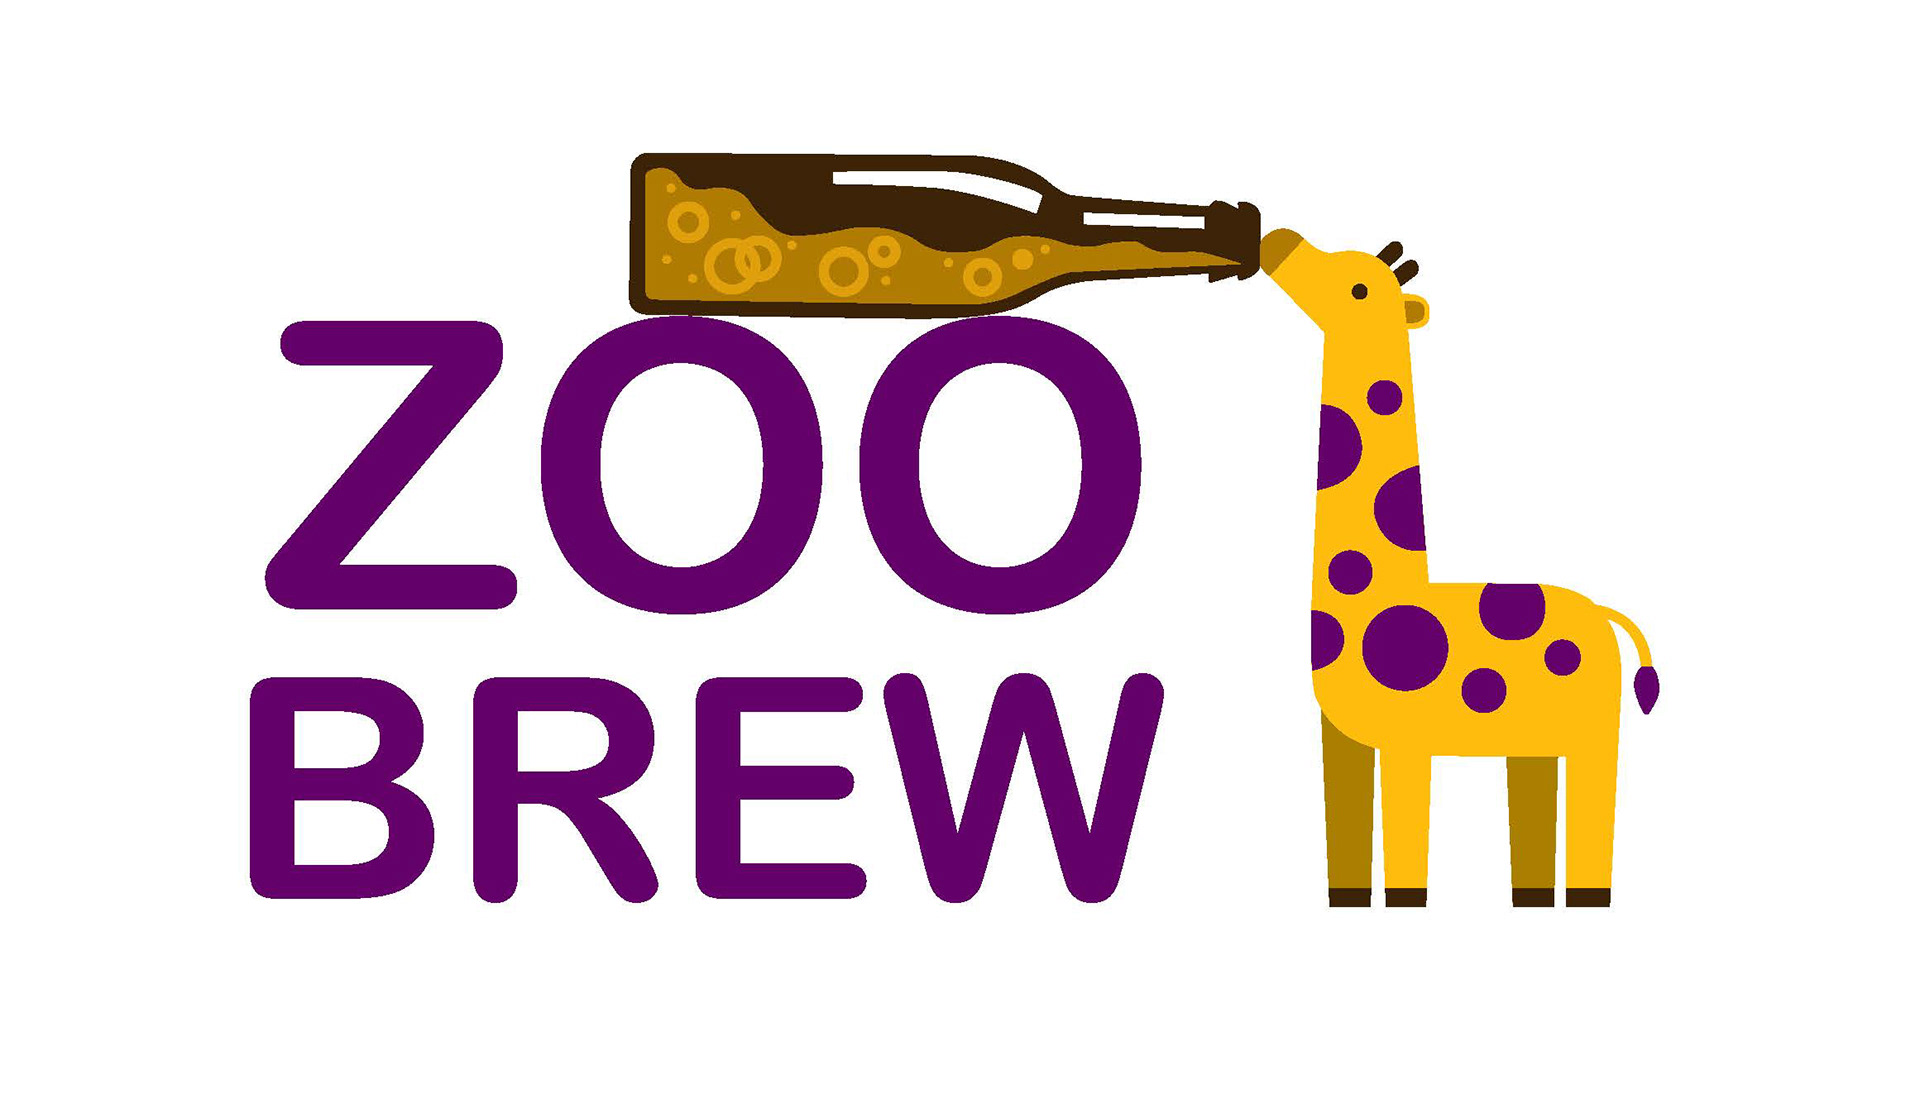 Alexandra Lumetta Zoo Brew App